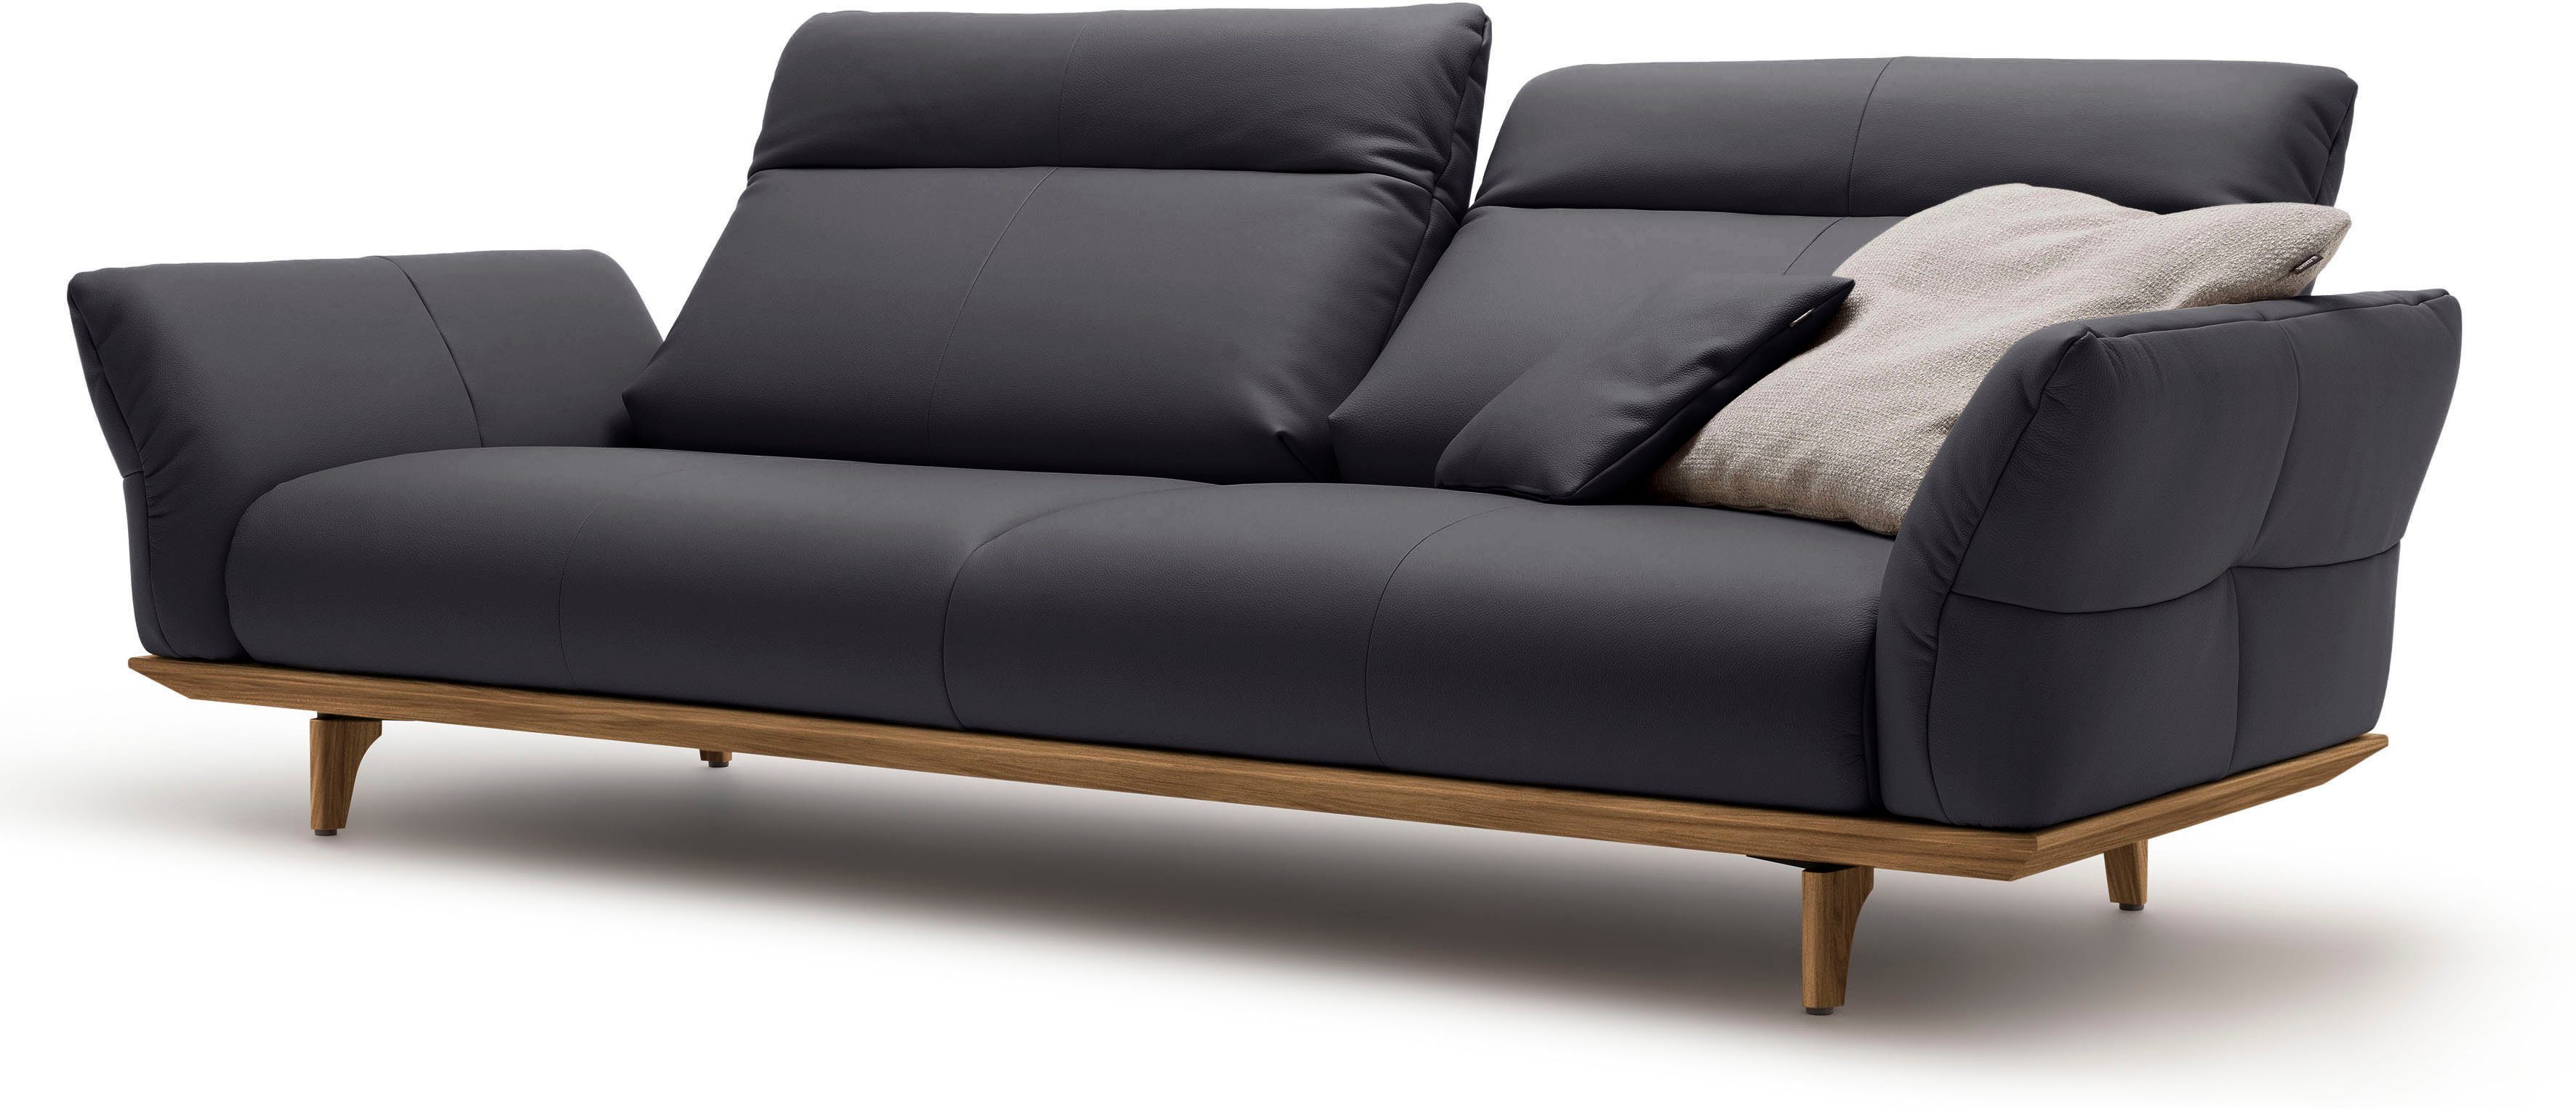 hs.460, sofa hülsta 3,5-Sitzer Füße Nussbaum, cm Breite in 228 und Sockel